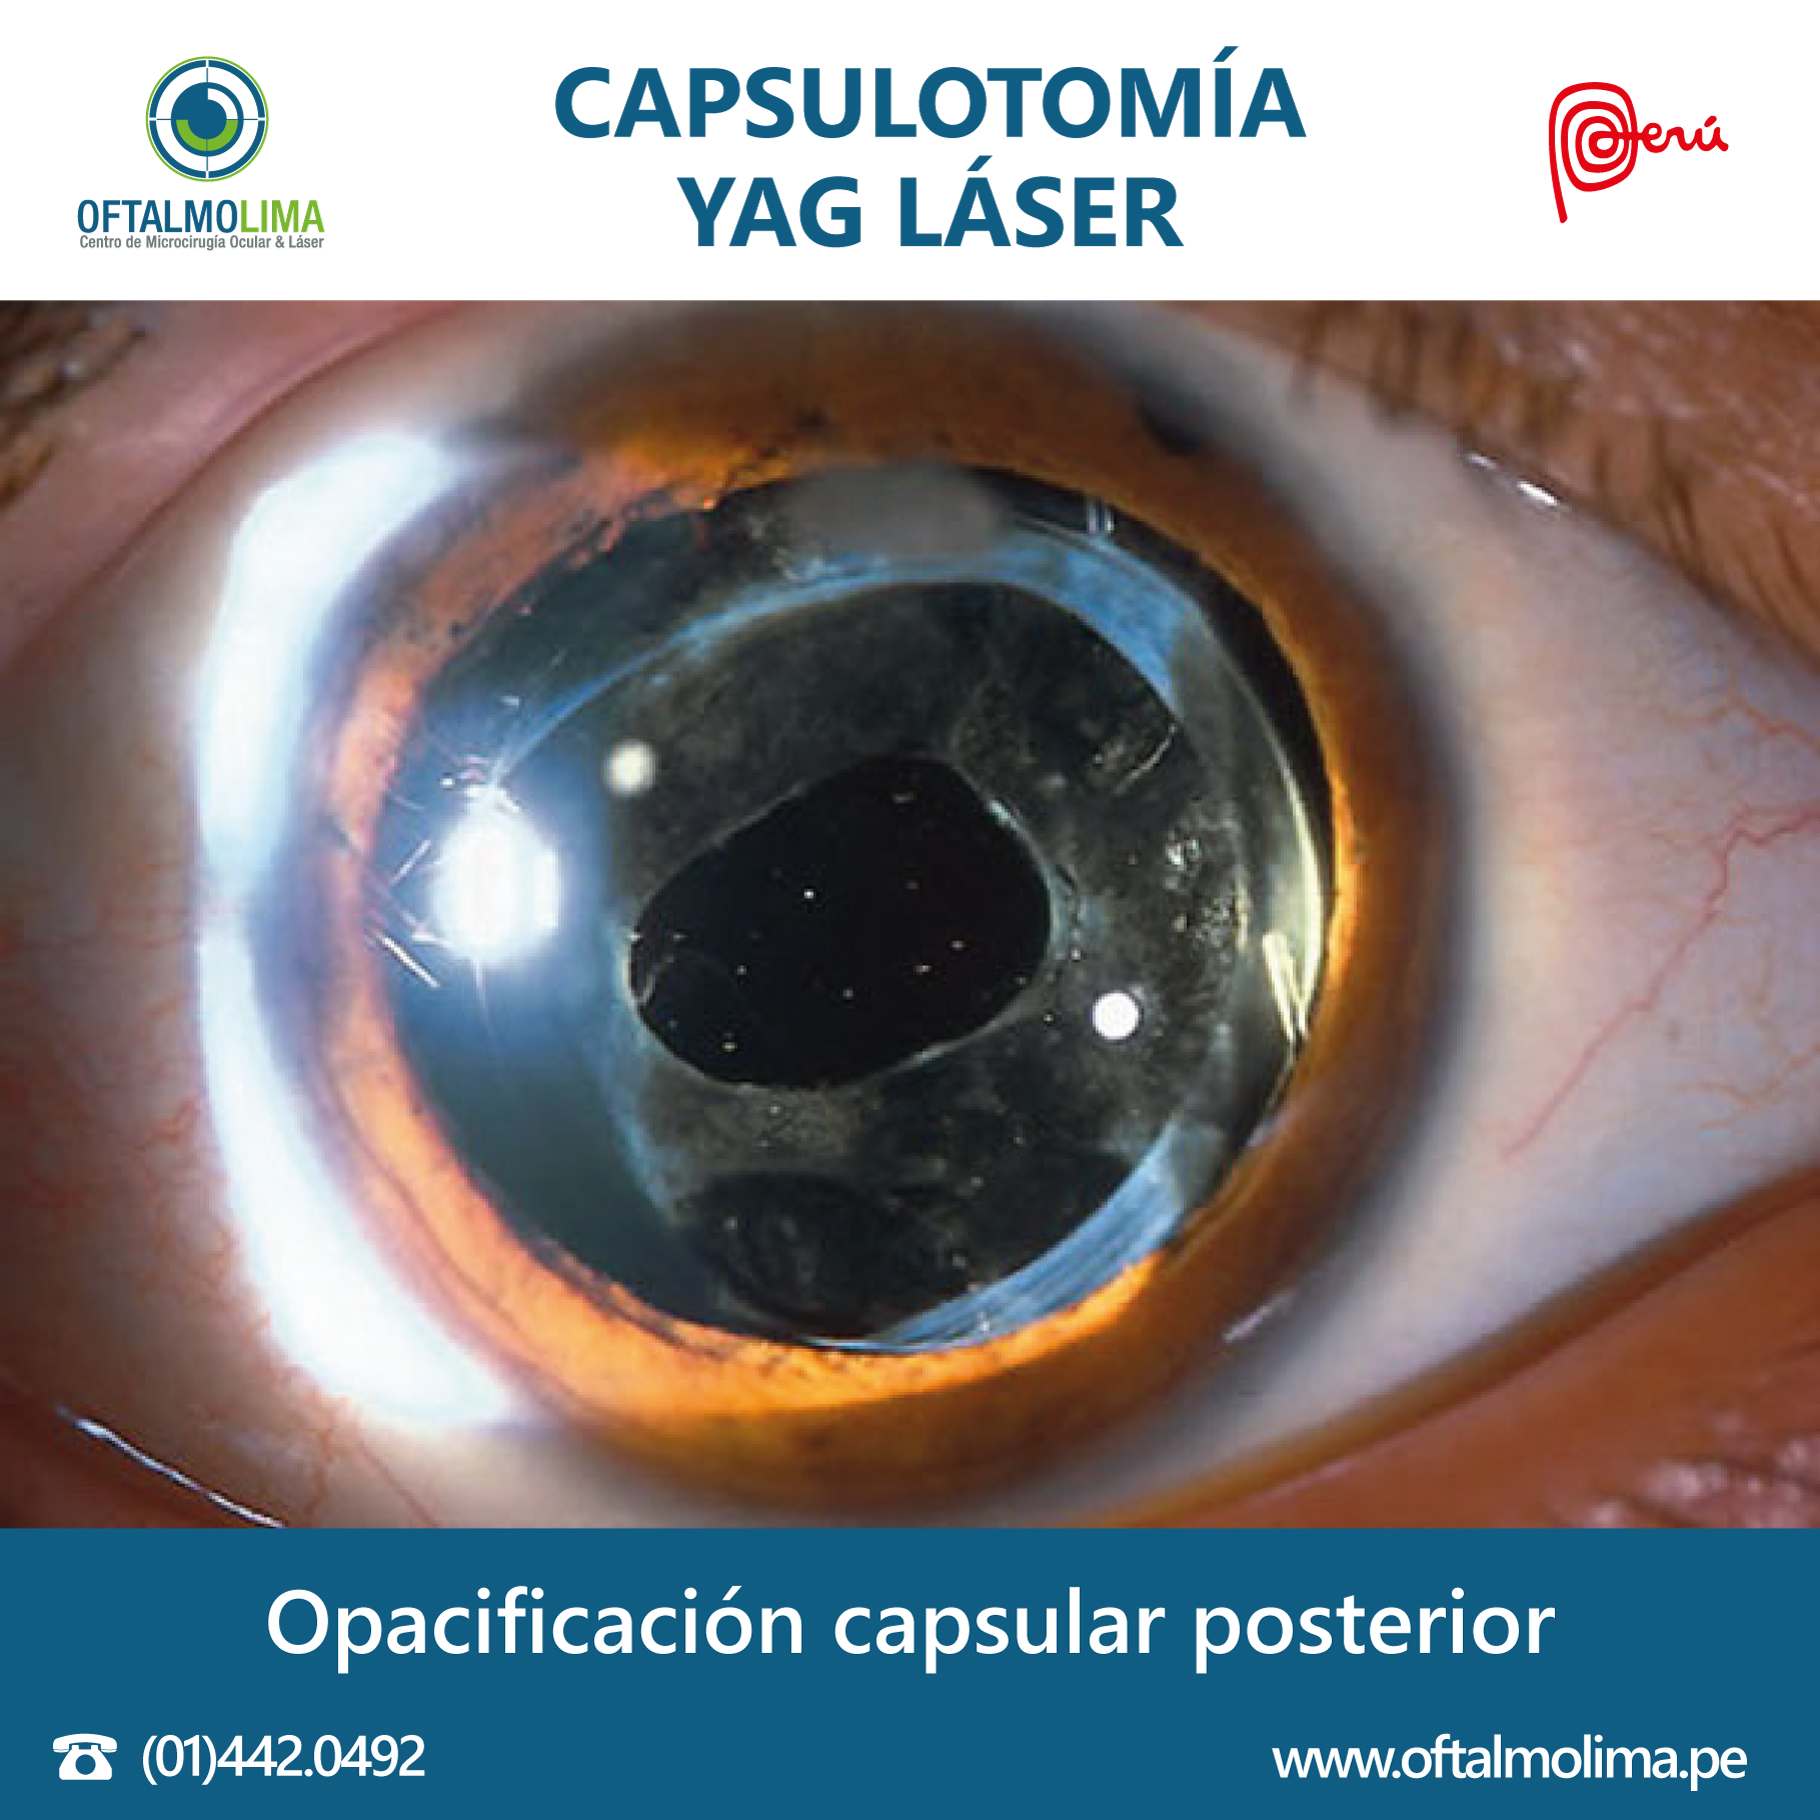 Баня после катаракты. Yag лазерная дисцизия вторичной катаракты. Лазерная капсулотомия. Yag лазерная капсулотомия.